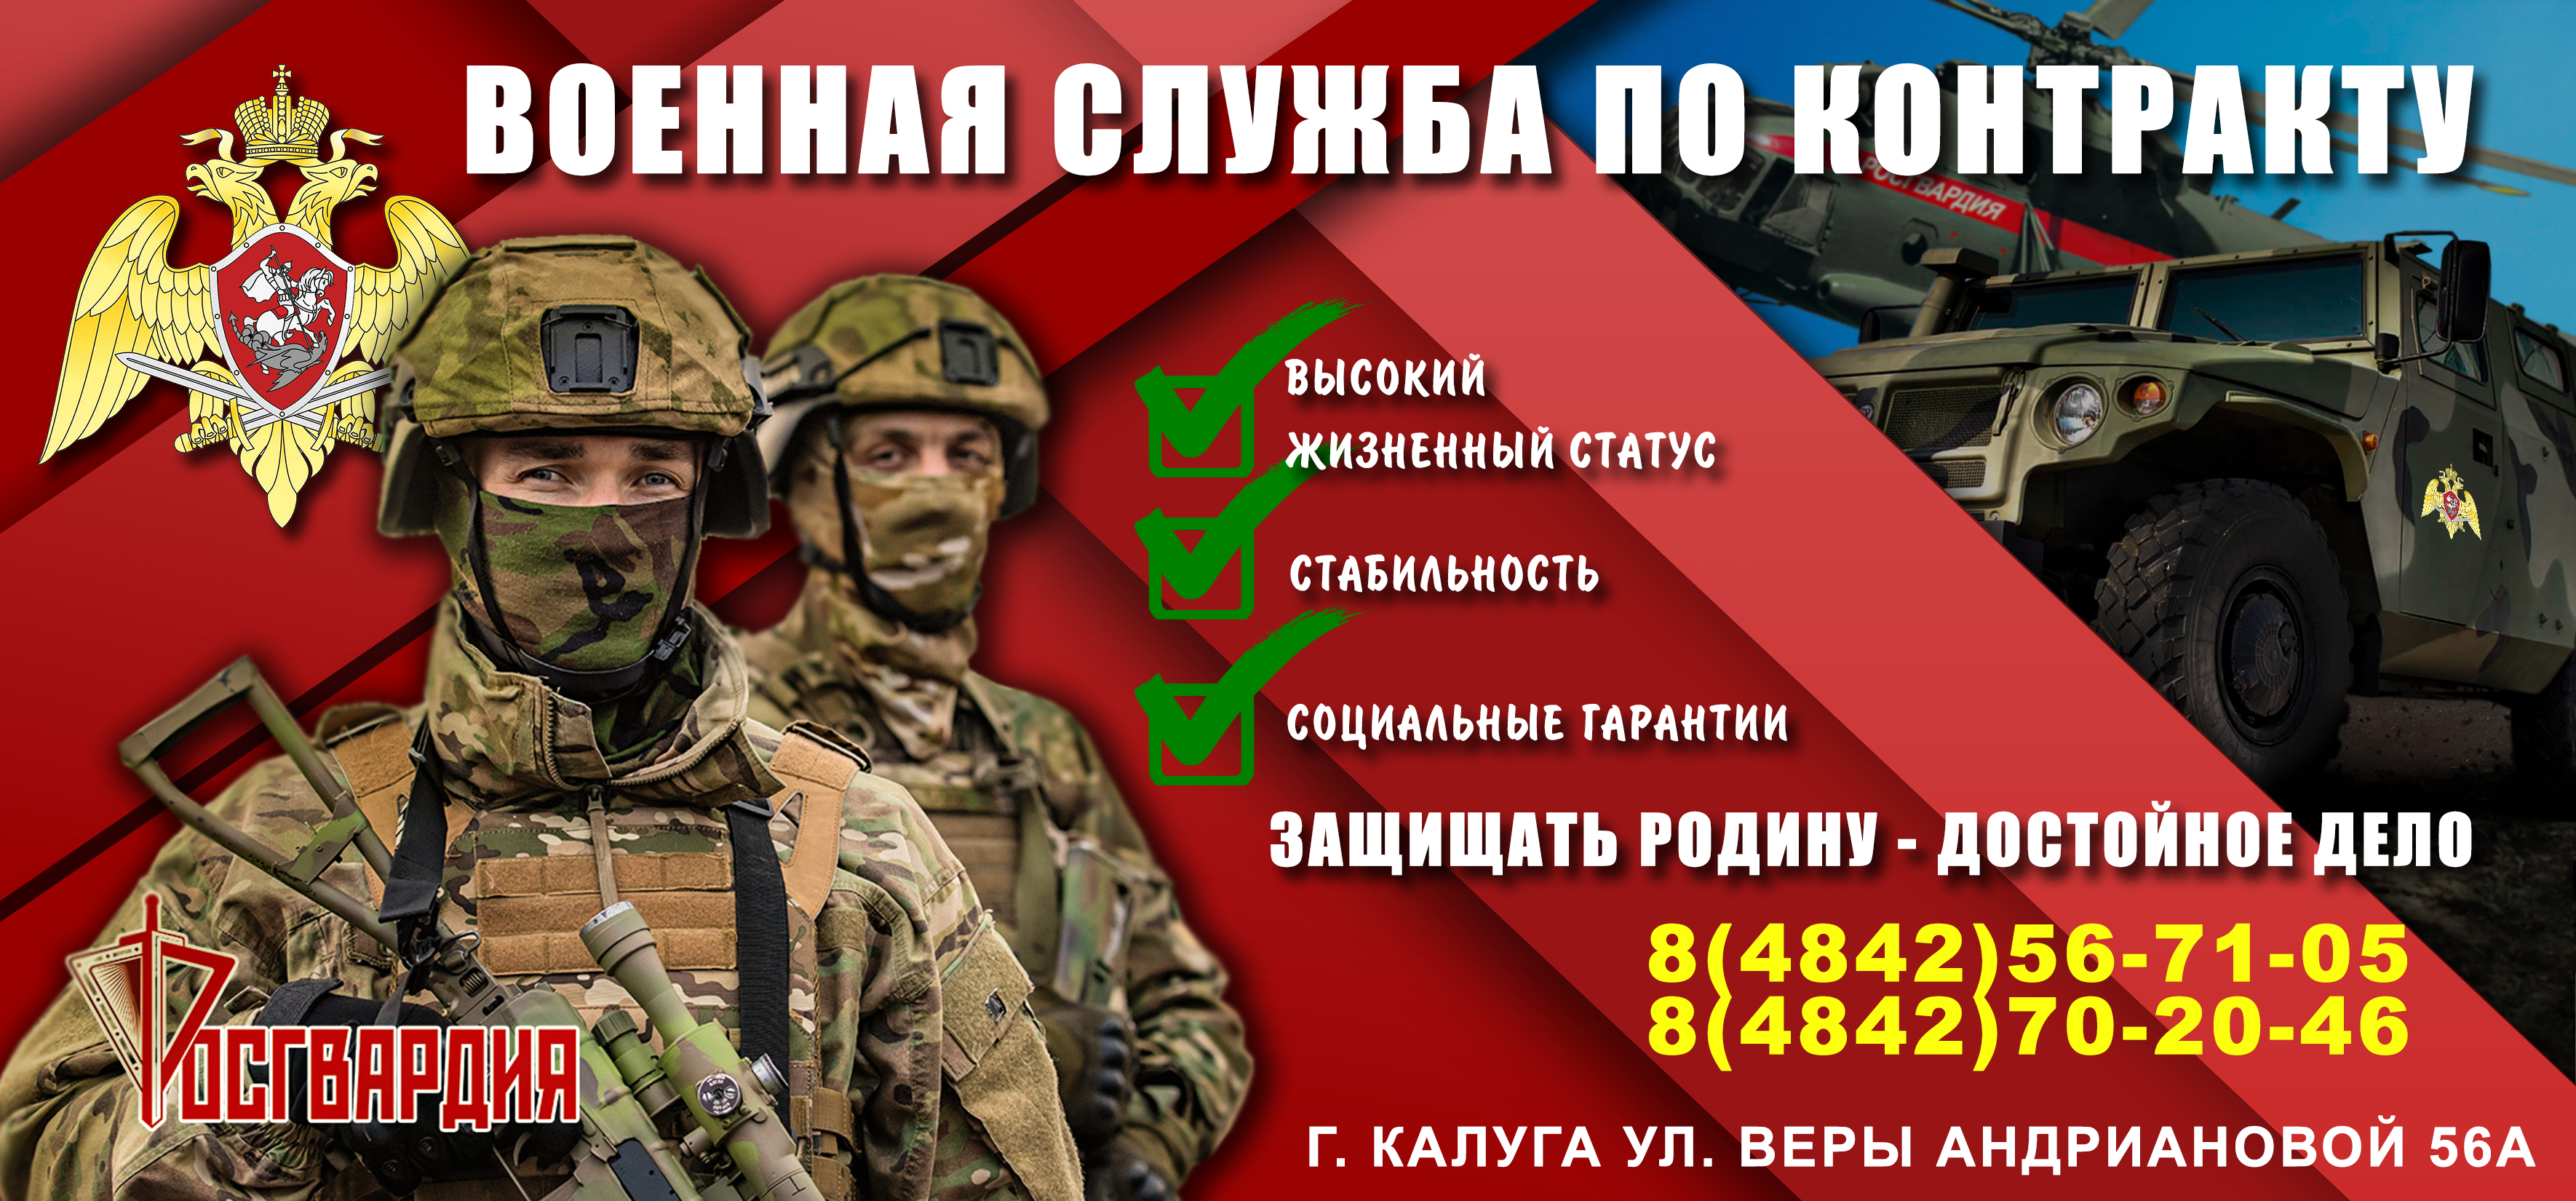 Управление Росгвардии по Калужской области проводит набор граждан для прохождения военной службы по контракту в новых регионах Российской Федерации.